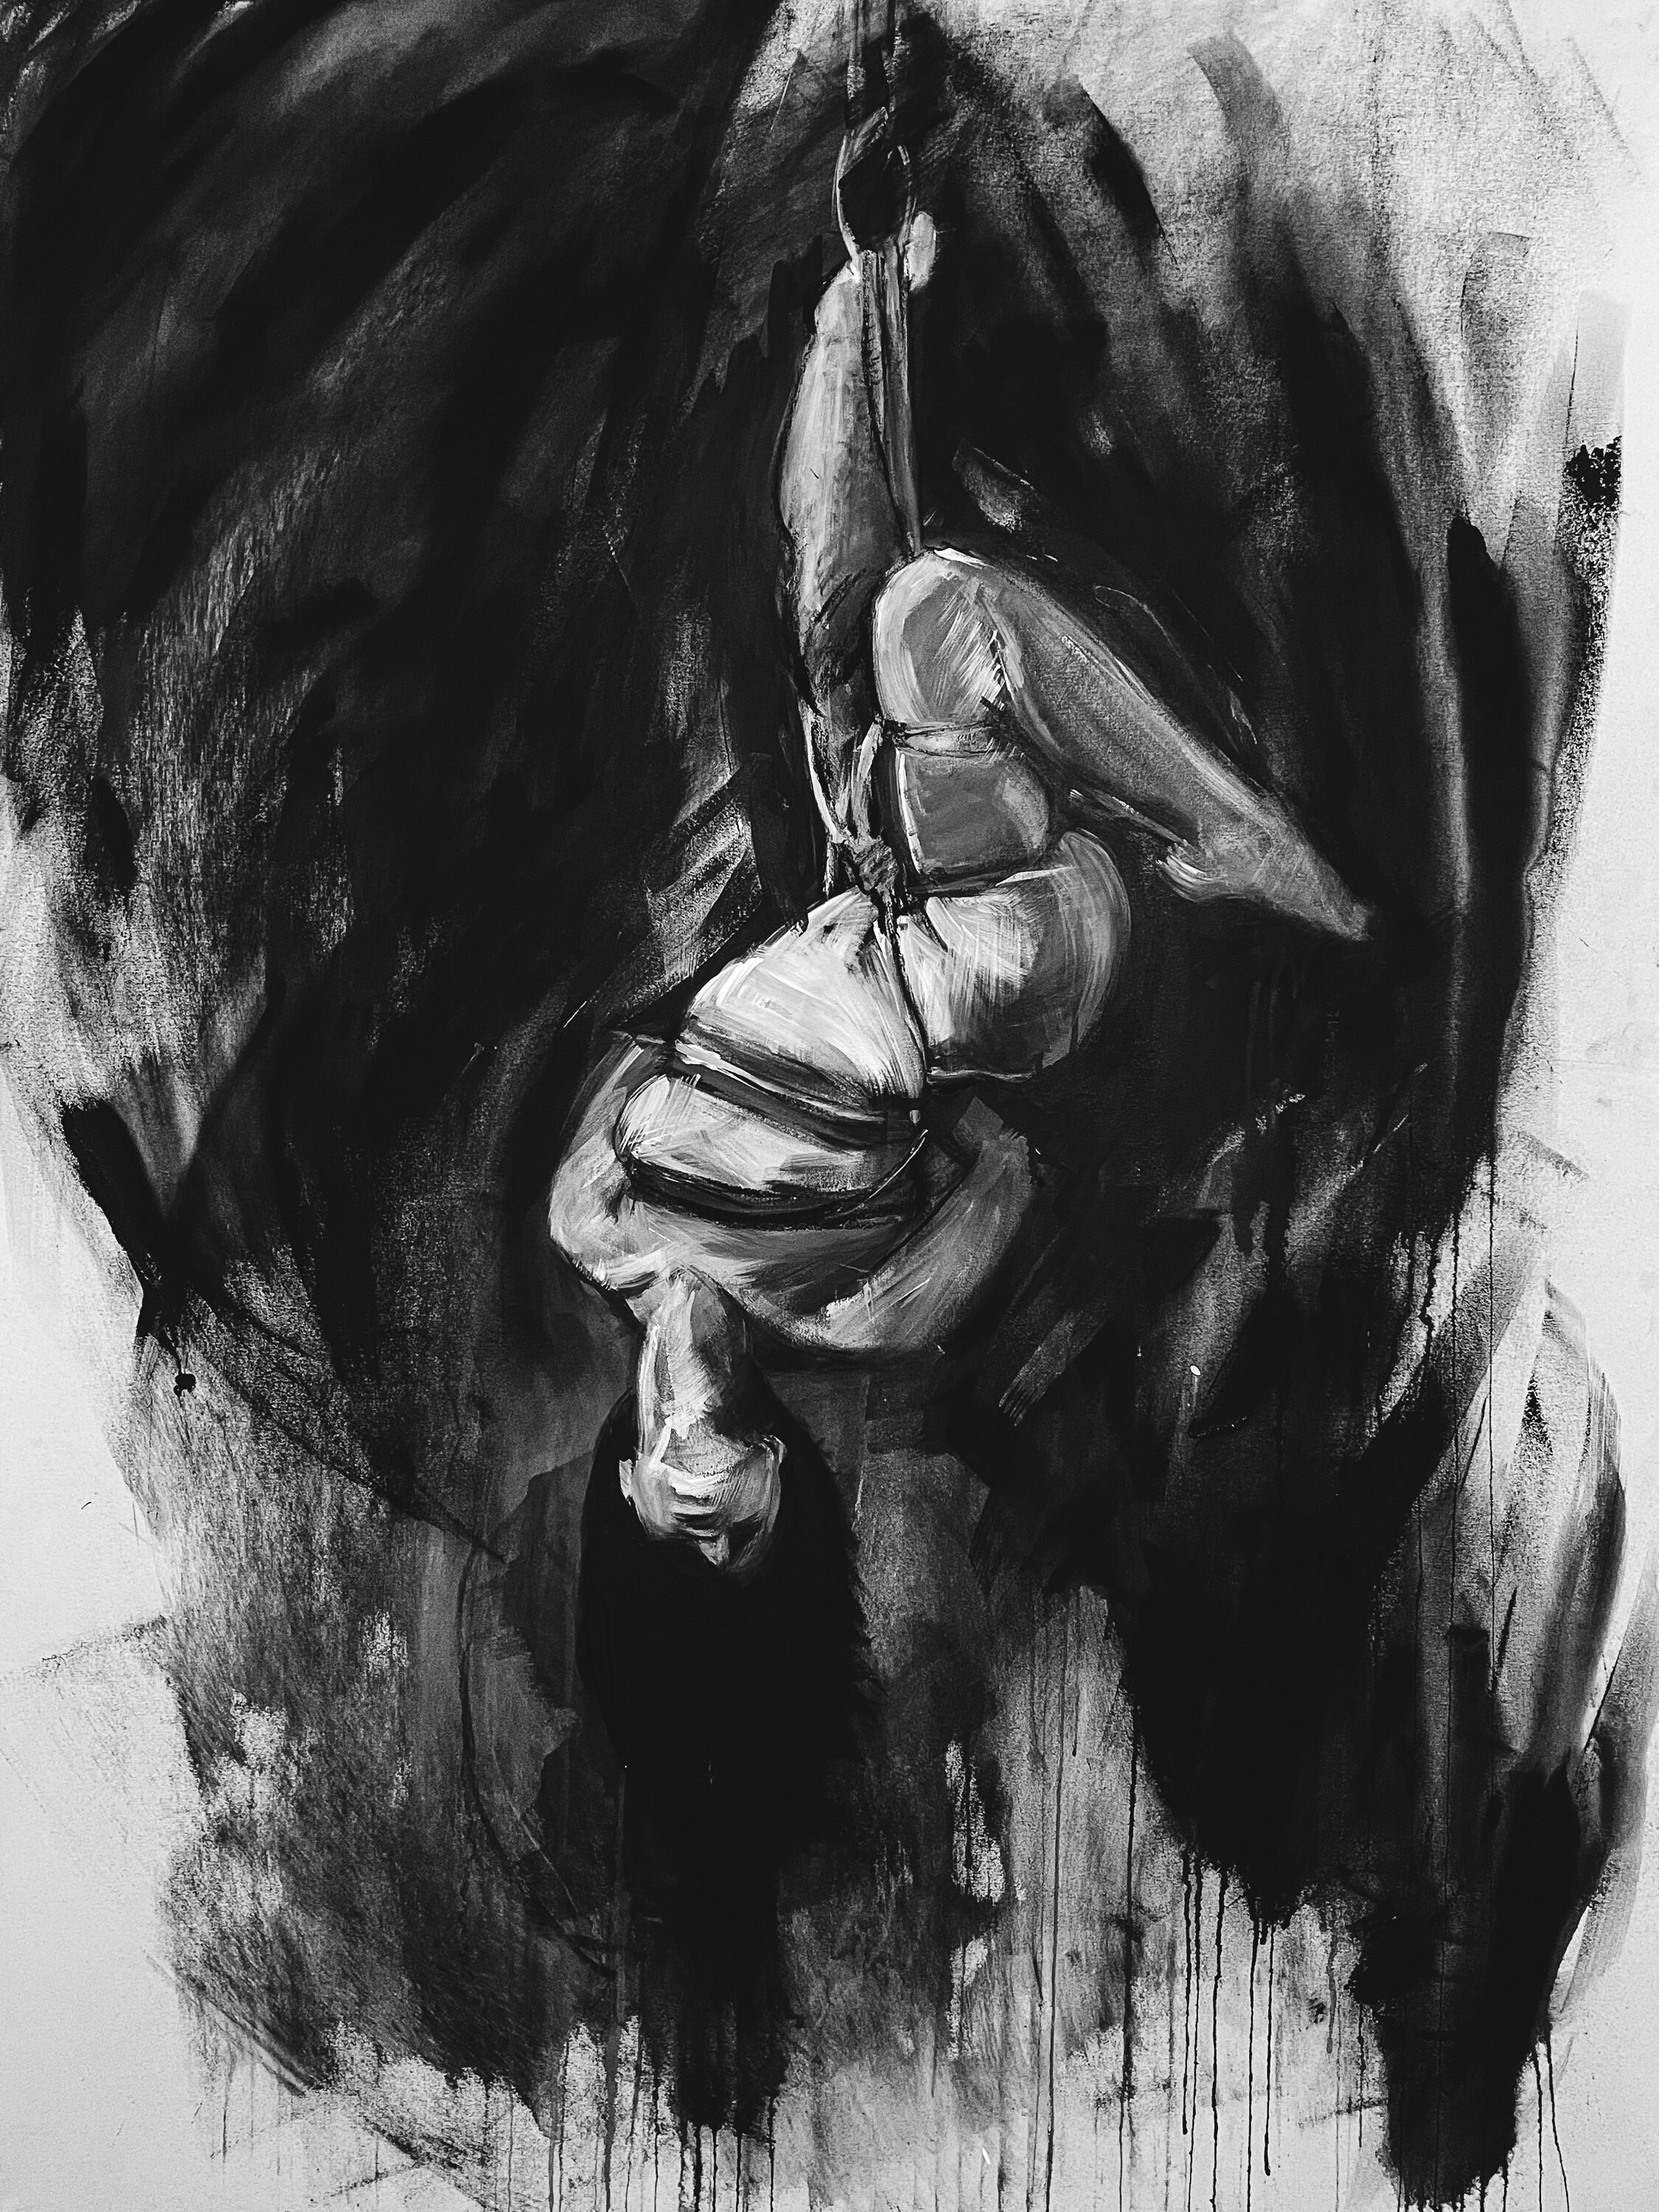 Shibari Suspension Artwork Black And White Kink Female Etsy Australia